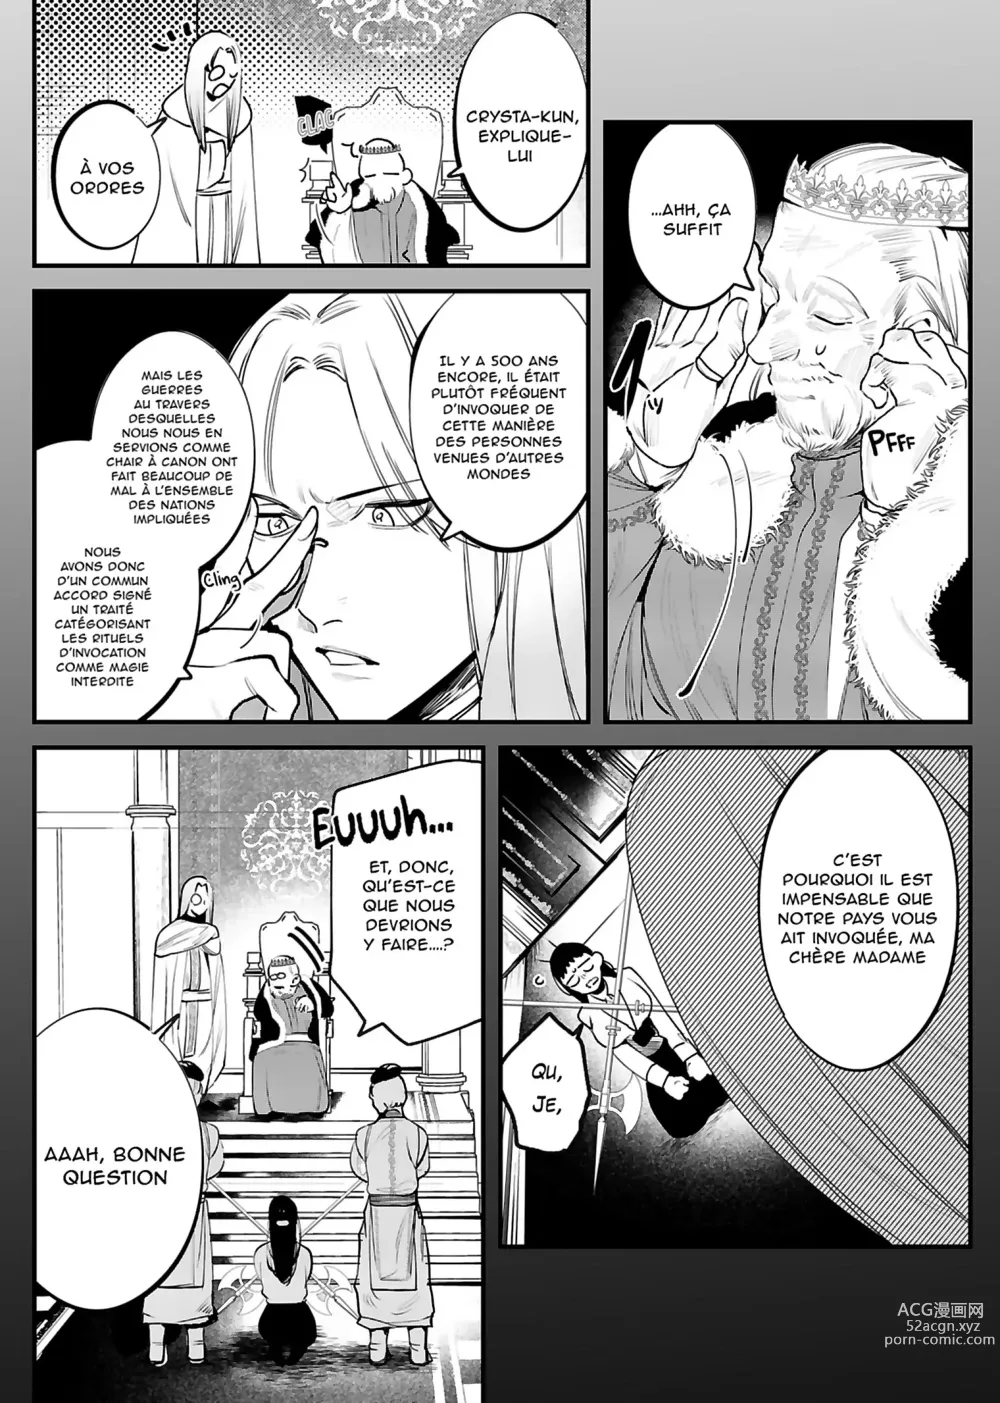 Page 7 of doujinshi Le jeune garçon qui m'a sauvée quand j'ai trébuché dans un autre monde était un meurtrier.